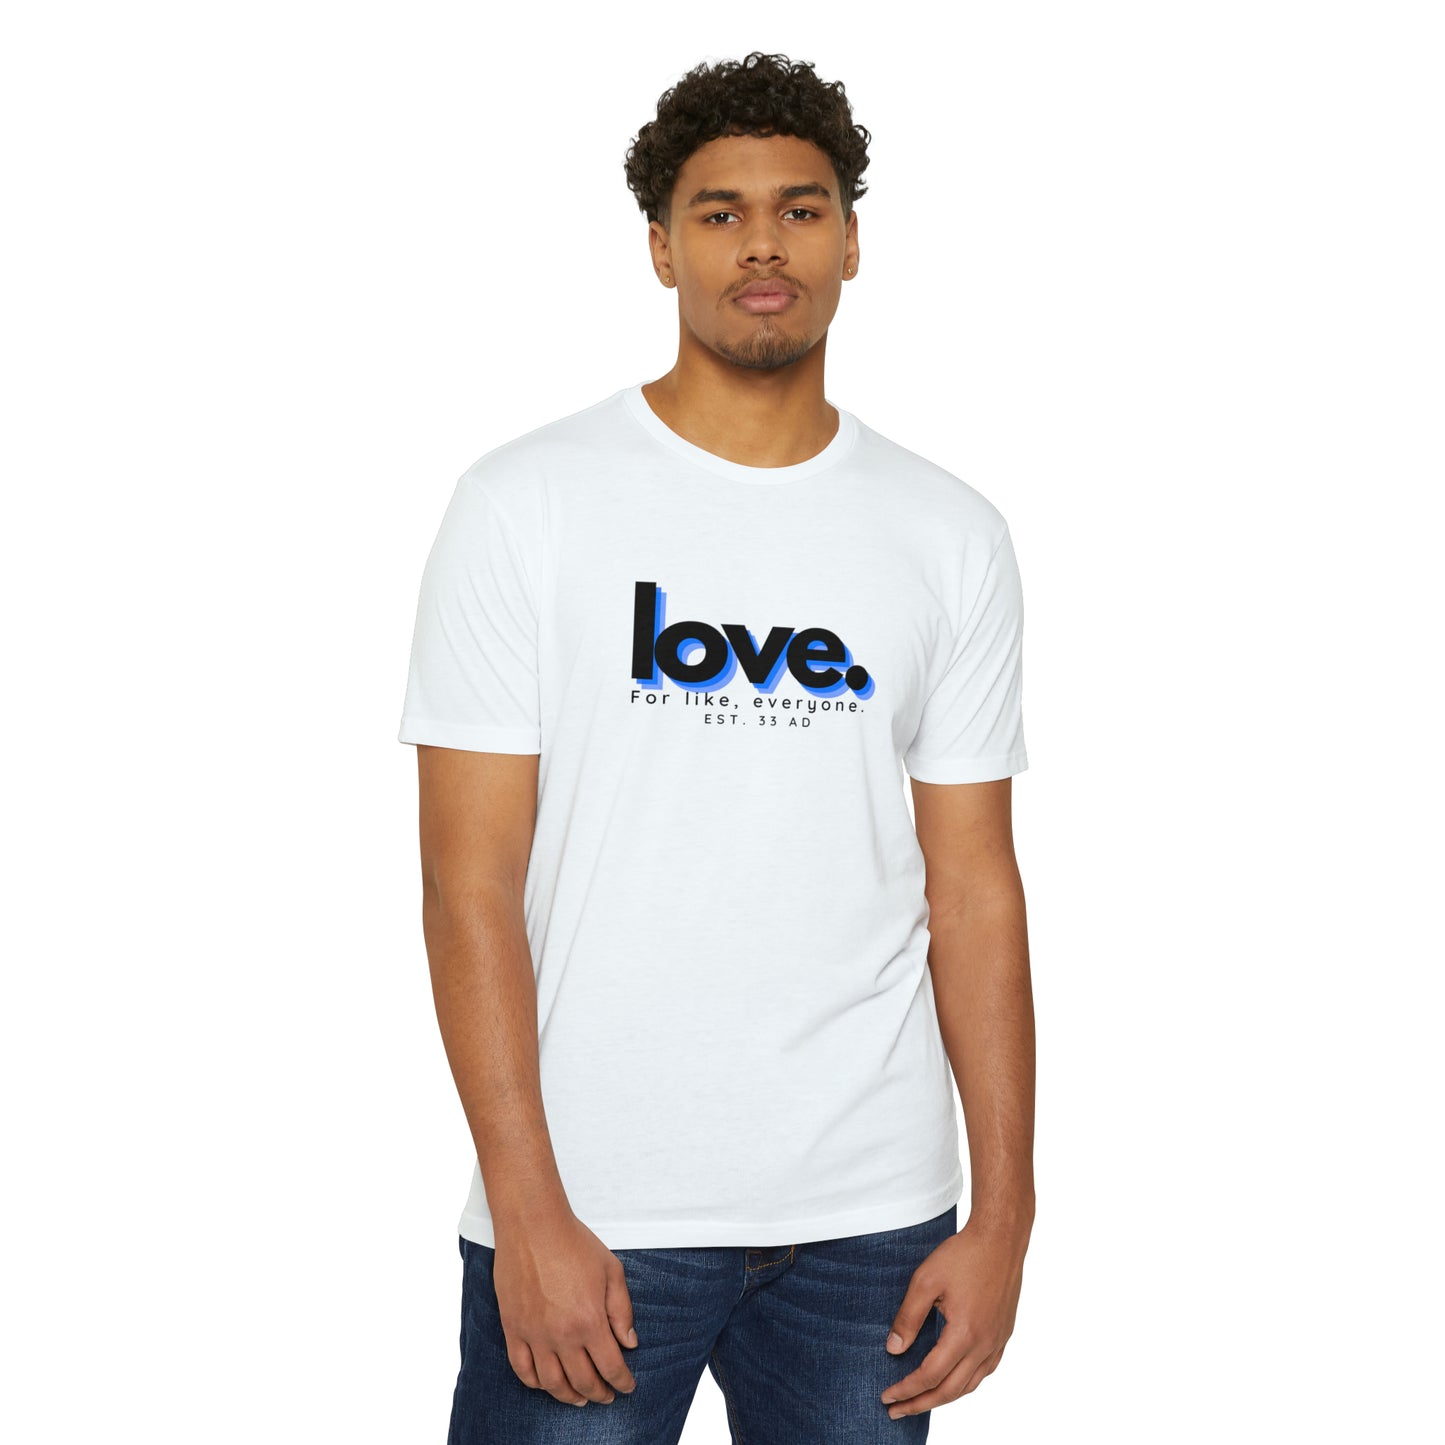 Love, Christian T-shirt for men and women